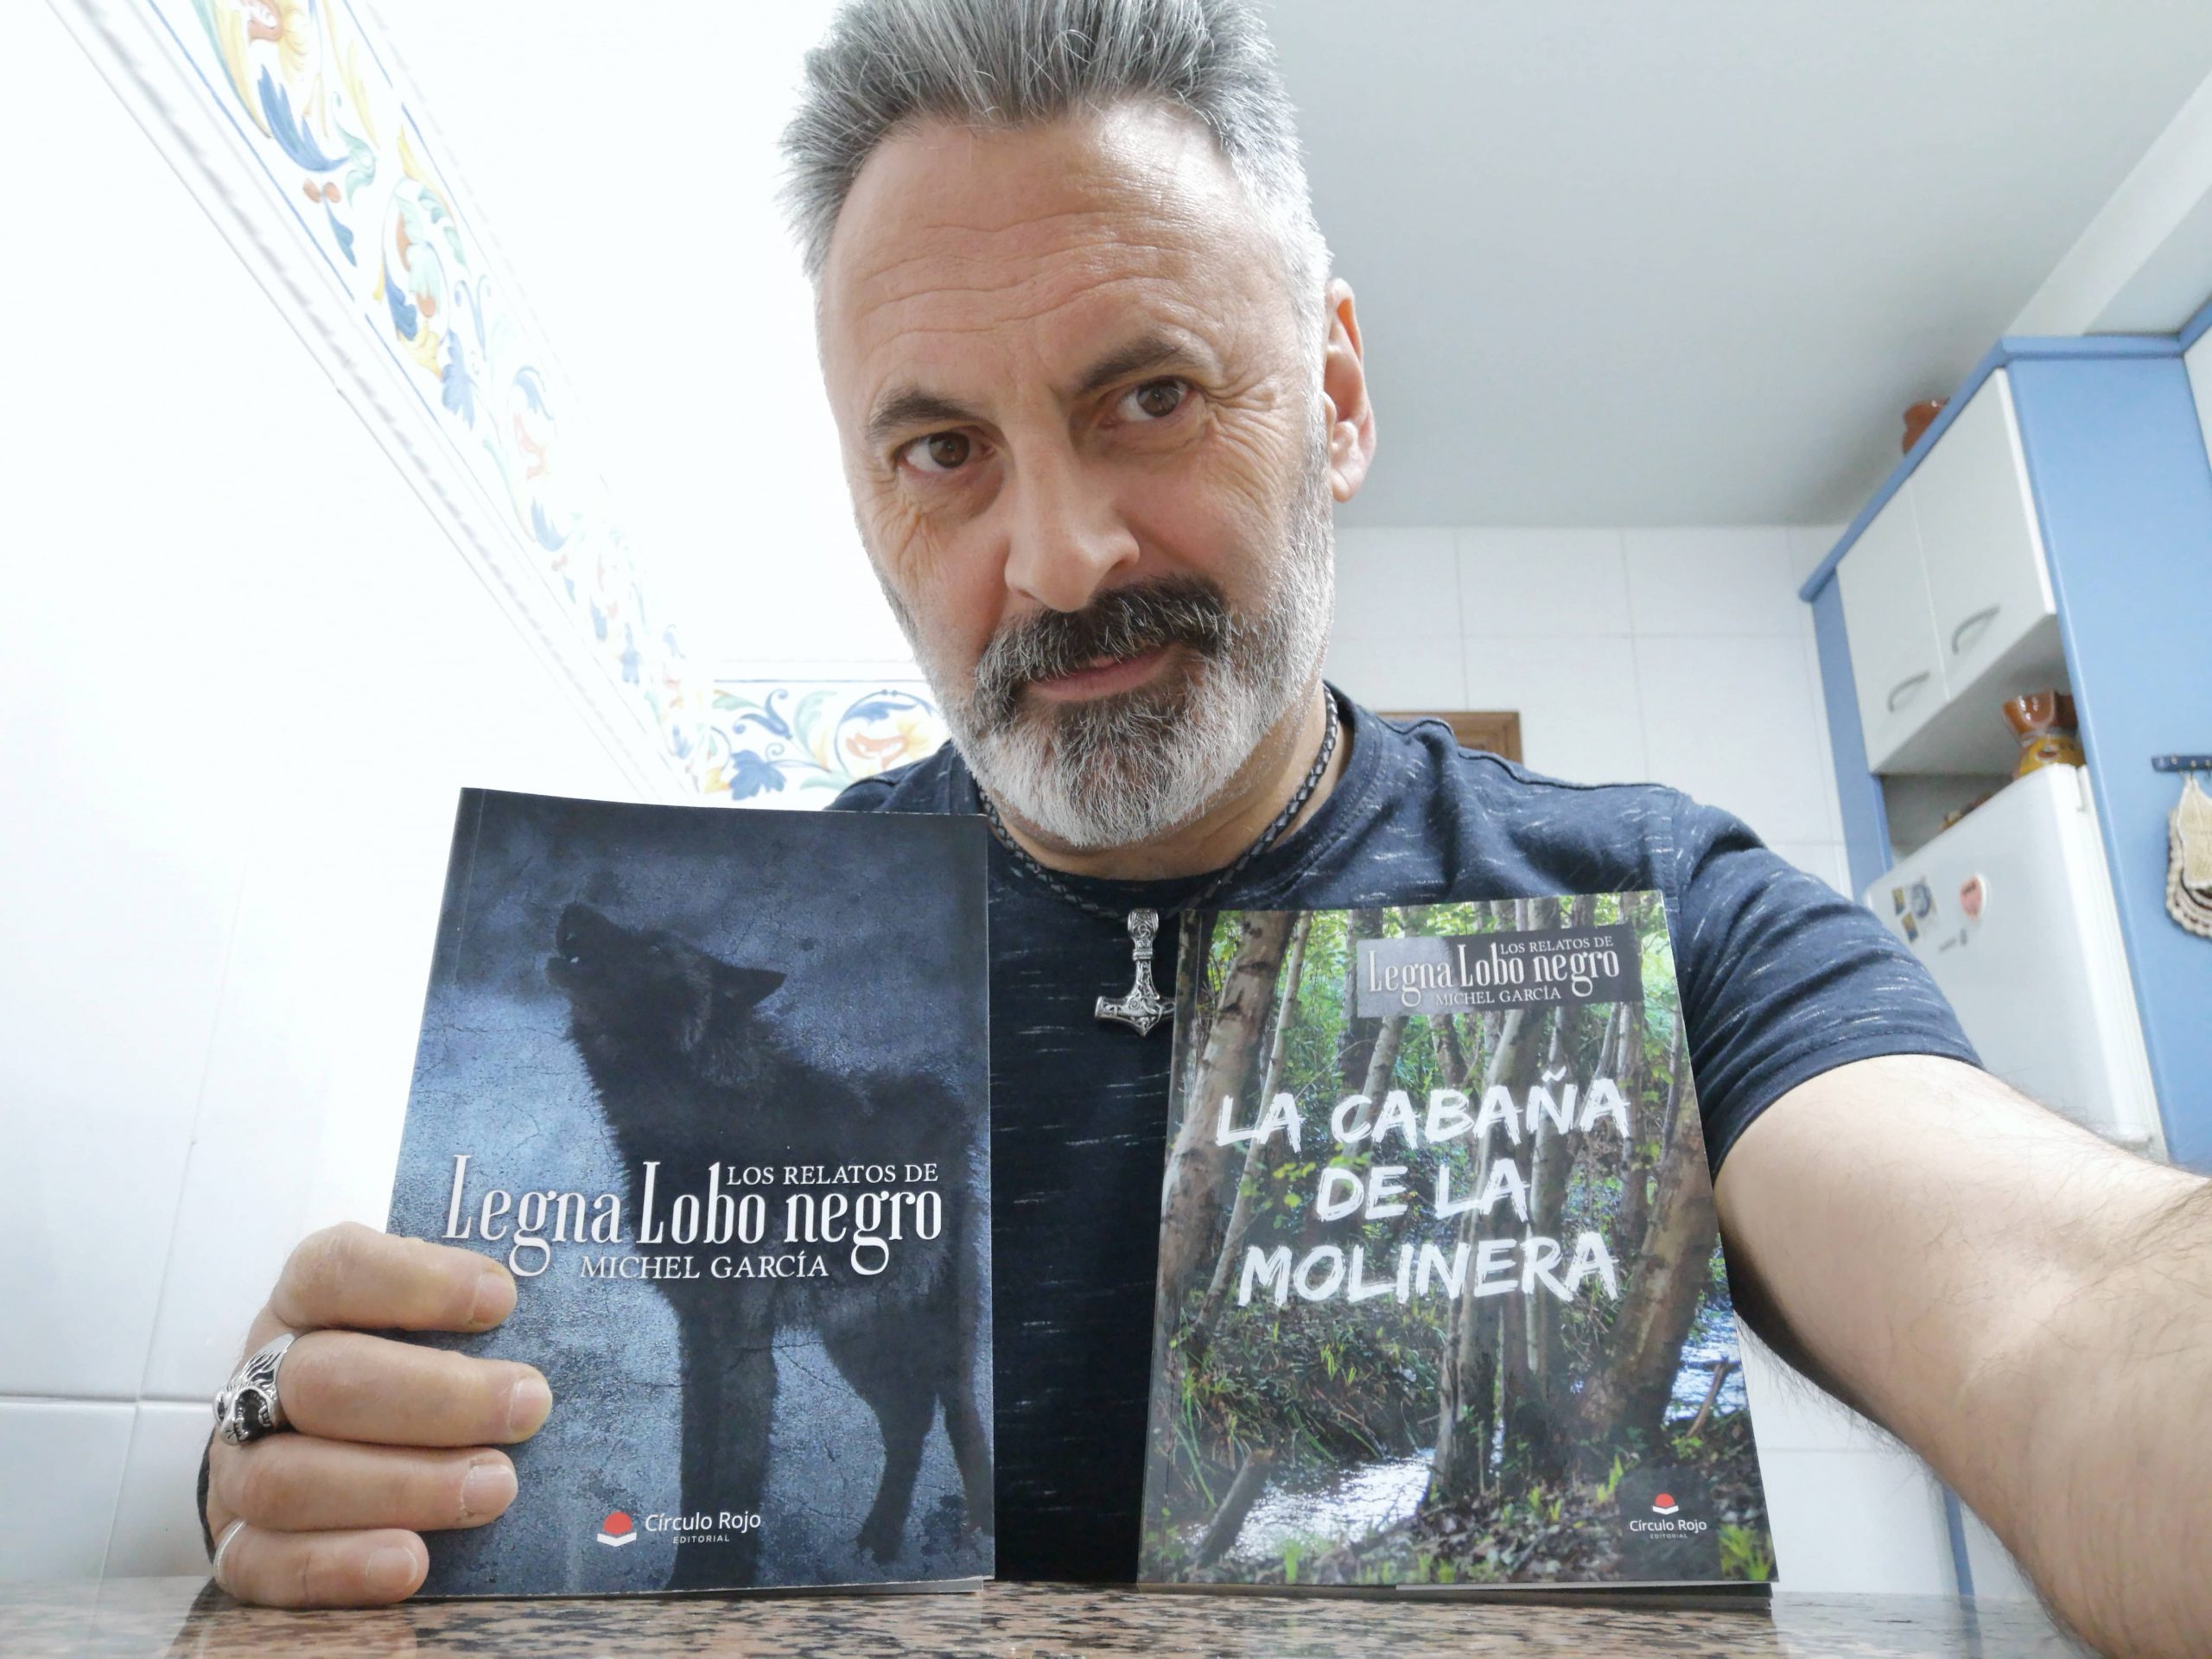 Conocemos a Michel García, escritor de «Los relatos de Legna Lobo negro» y «La cabaña de la Molinera».